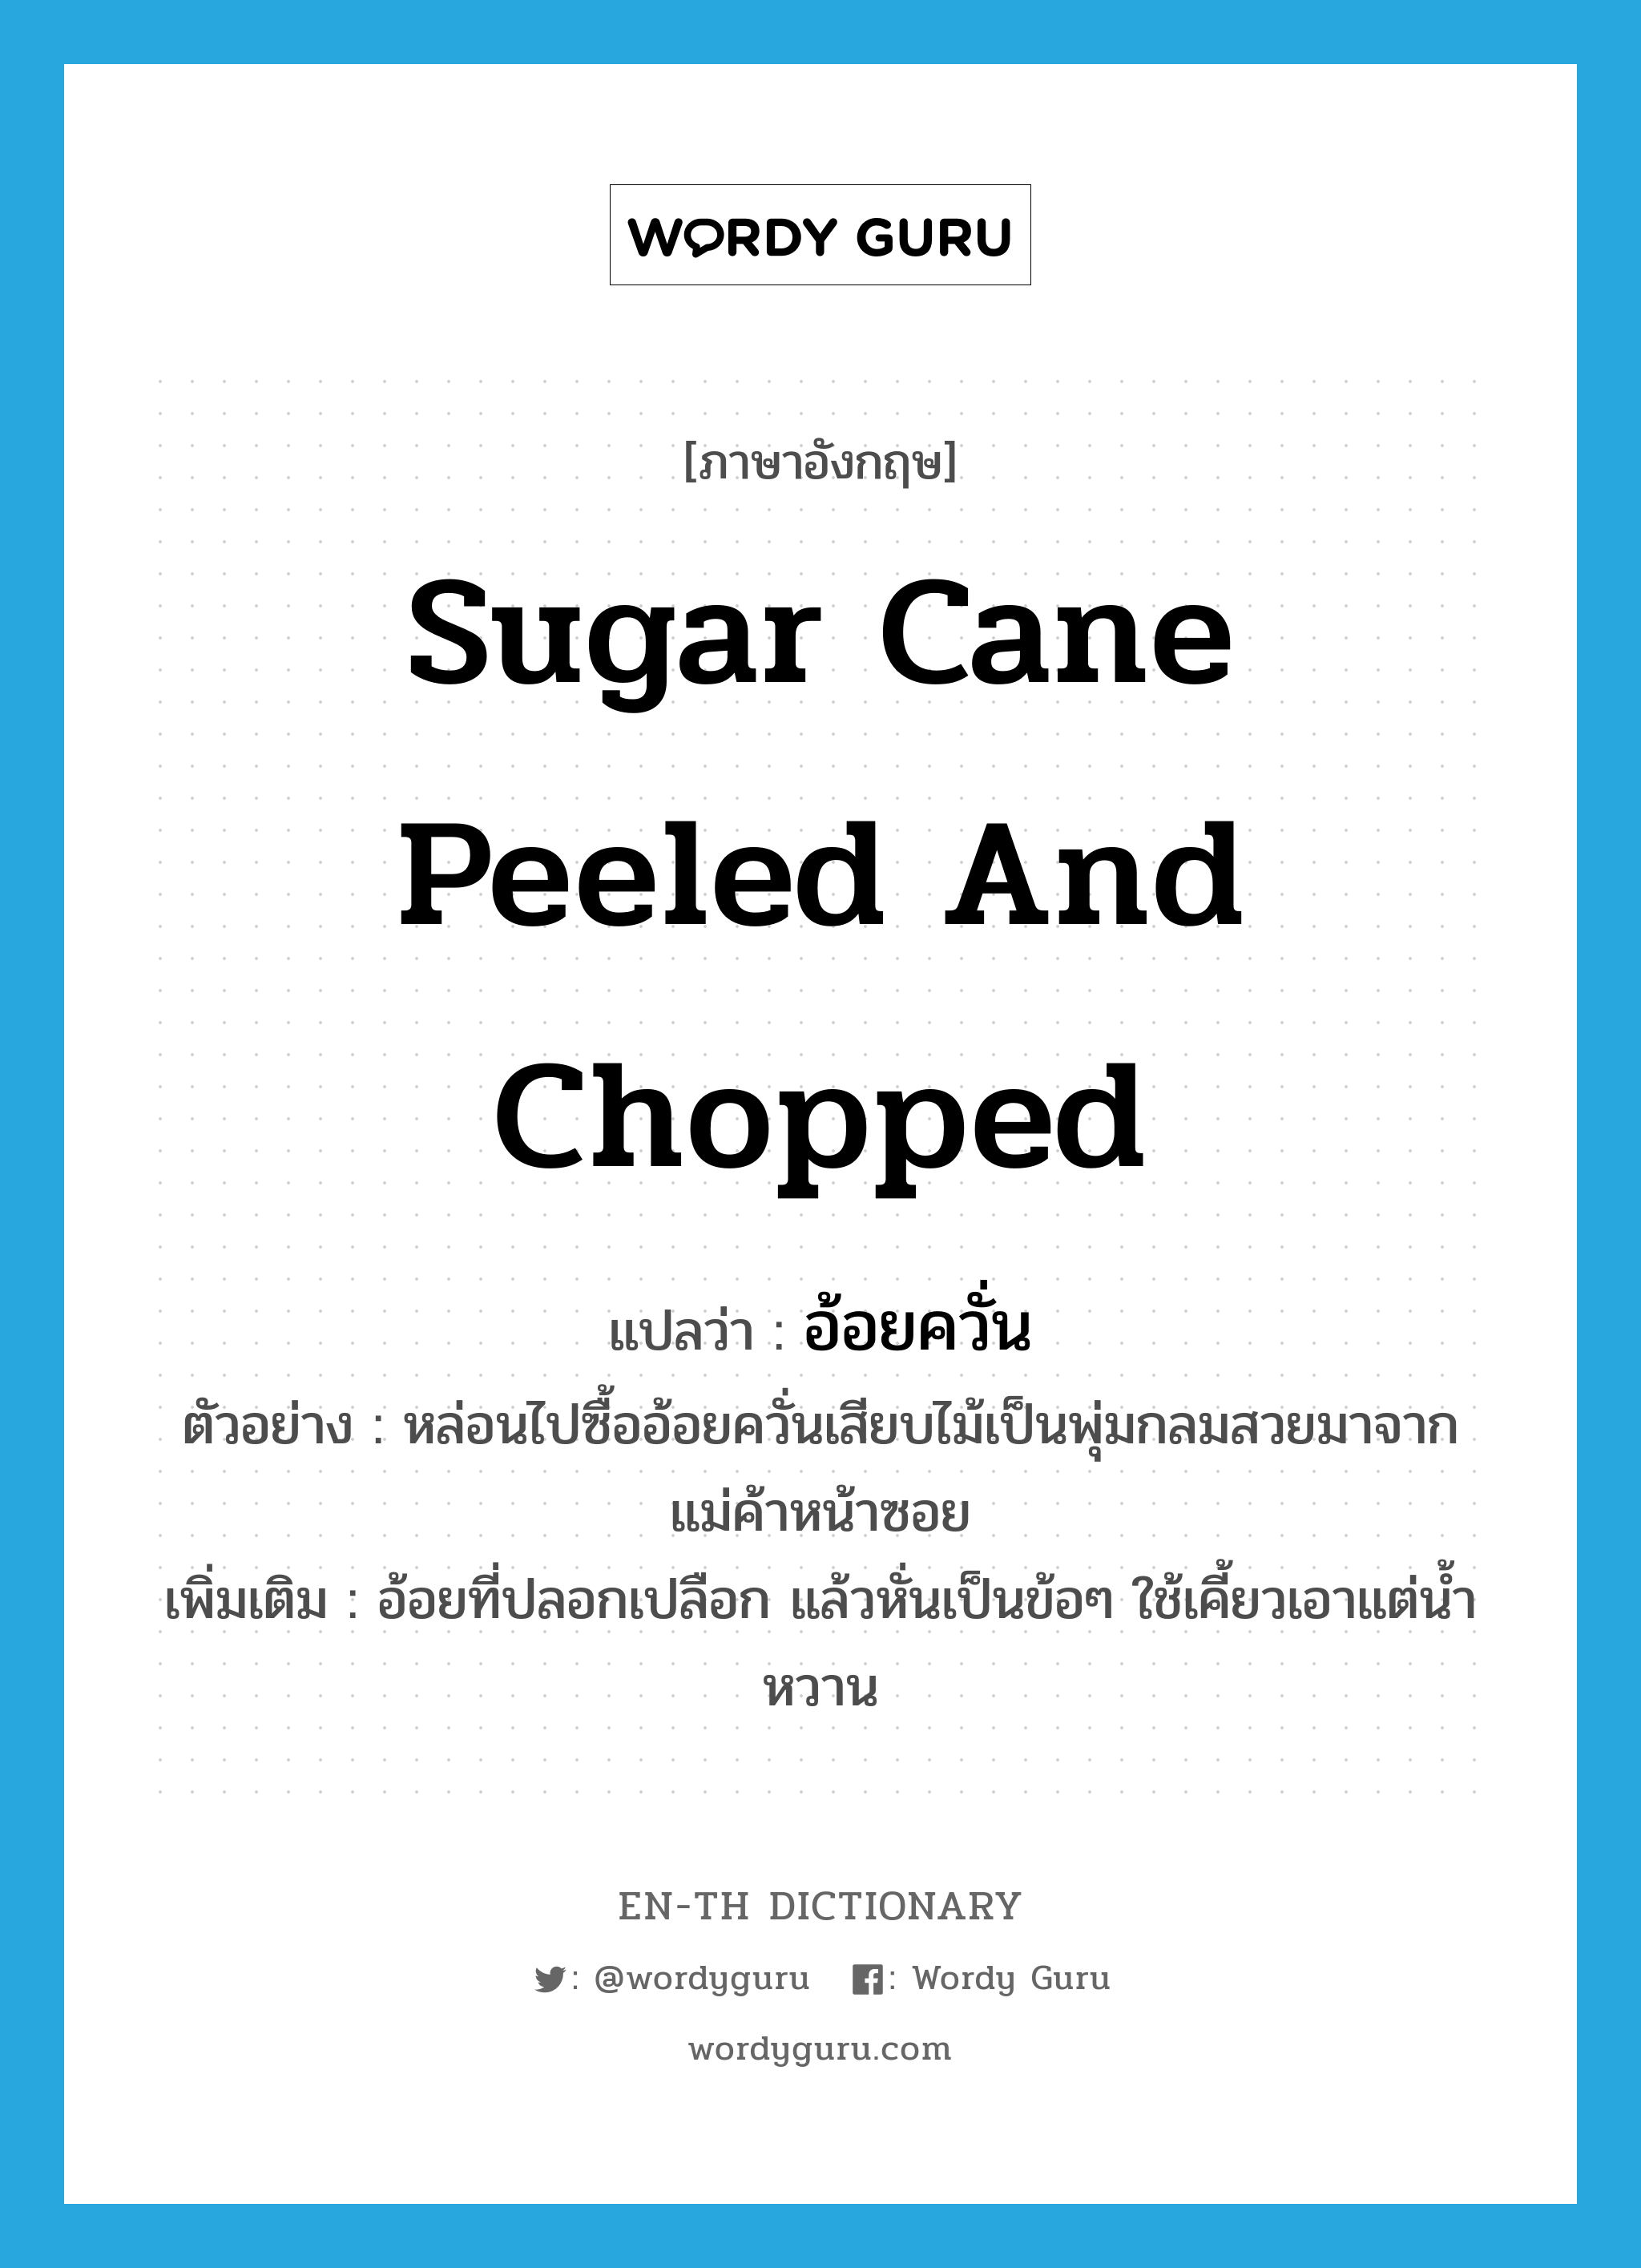 sugar cane peeled and chopped แปลว่า?, คำศัพท์ภาษาอังกฤษ sugar cane peeled and chopped แปลว่า อ้อยควั่น ประเภท N ตัวอย่าง หล่อนไปซื้ออ้อยควั่นเสียบไม้เป็นพุ่มกลมสวยมาจากแม่ค้าหน้าซอย เพิ่มเติม อ้อยที่ปลอกเปลือก แล้วหั่นเป็นข้อๆ ใช้เคี้ยวเอาแต่น้ำหวาน หมวด N